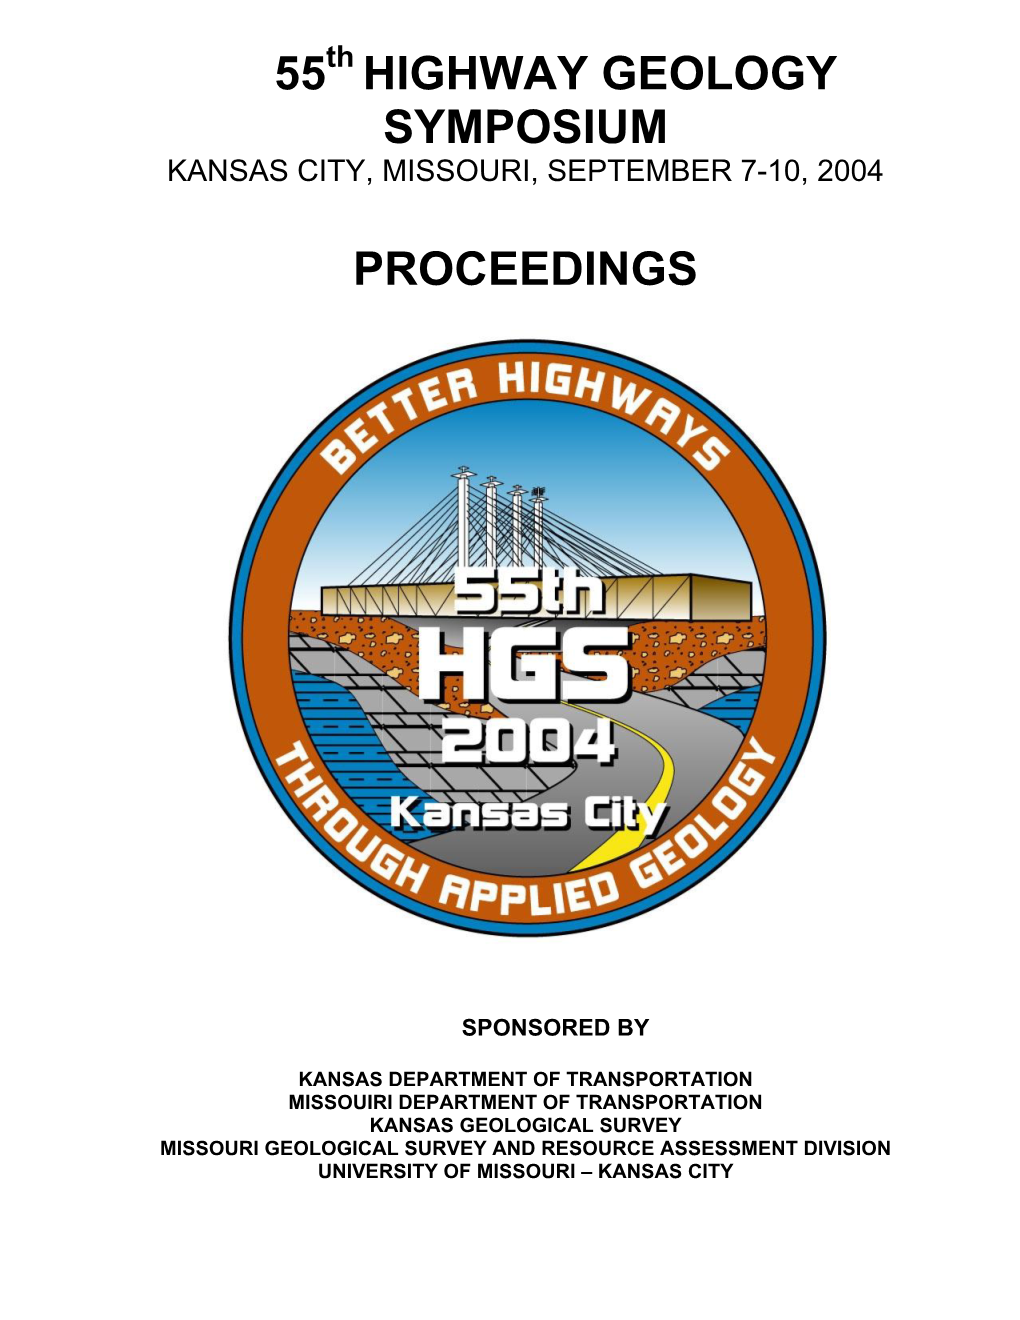 55 Highway Geology Symposium Proceedings